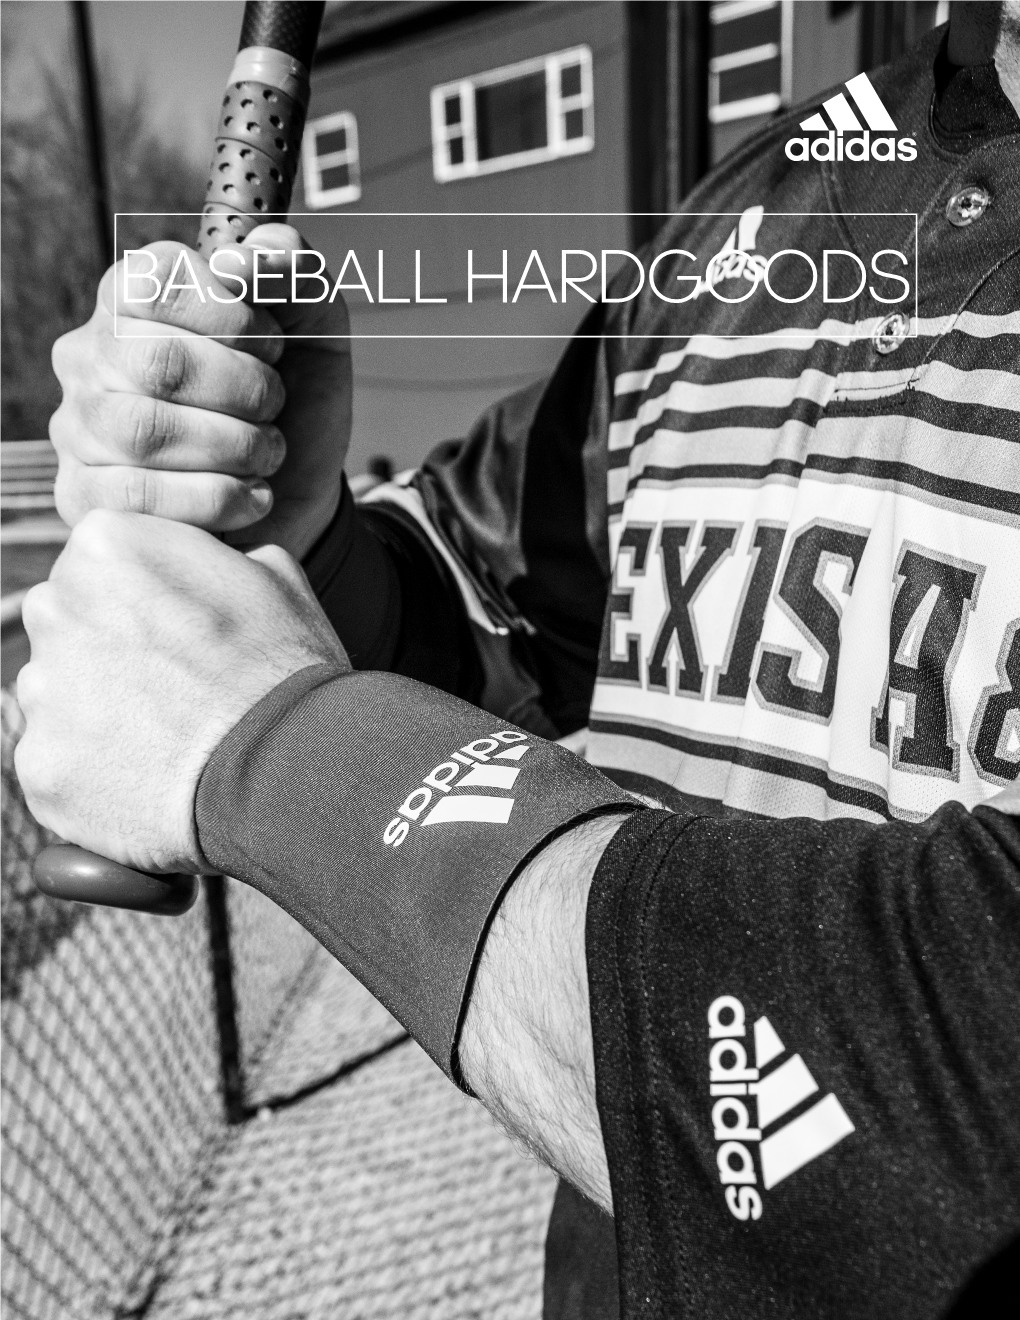 Baseball Hardgoods Revised 5-18-17 10 Adidas-Team.Com